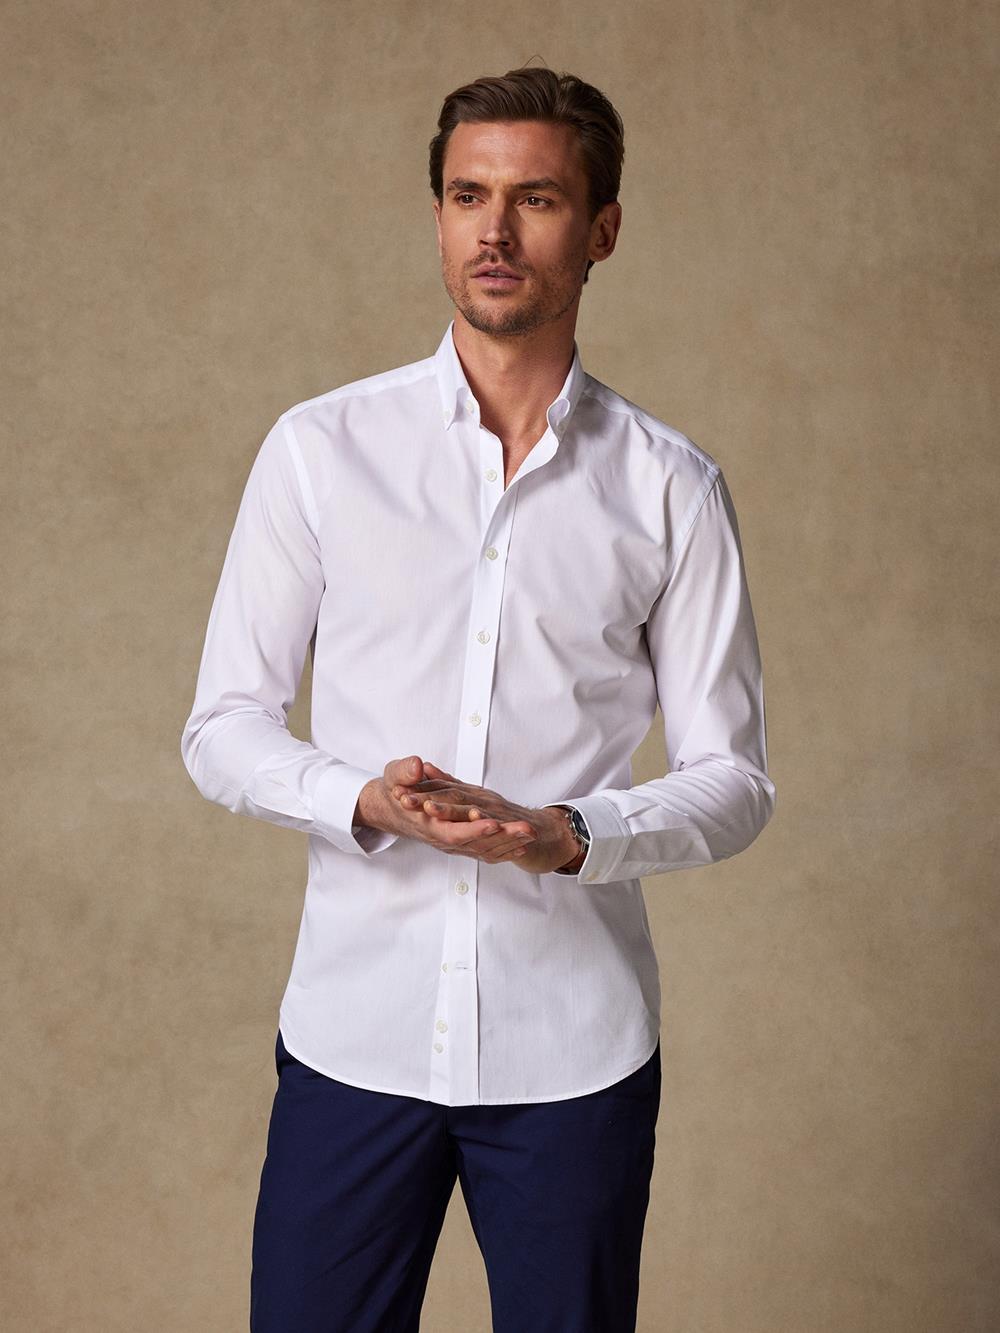 PopelineTailliertes Tailliertes Hemd weiß - Buttondown Kragen